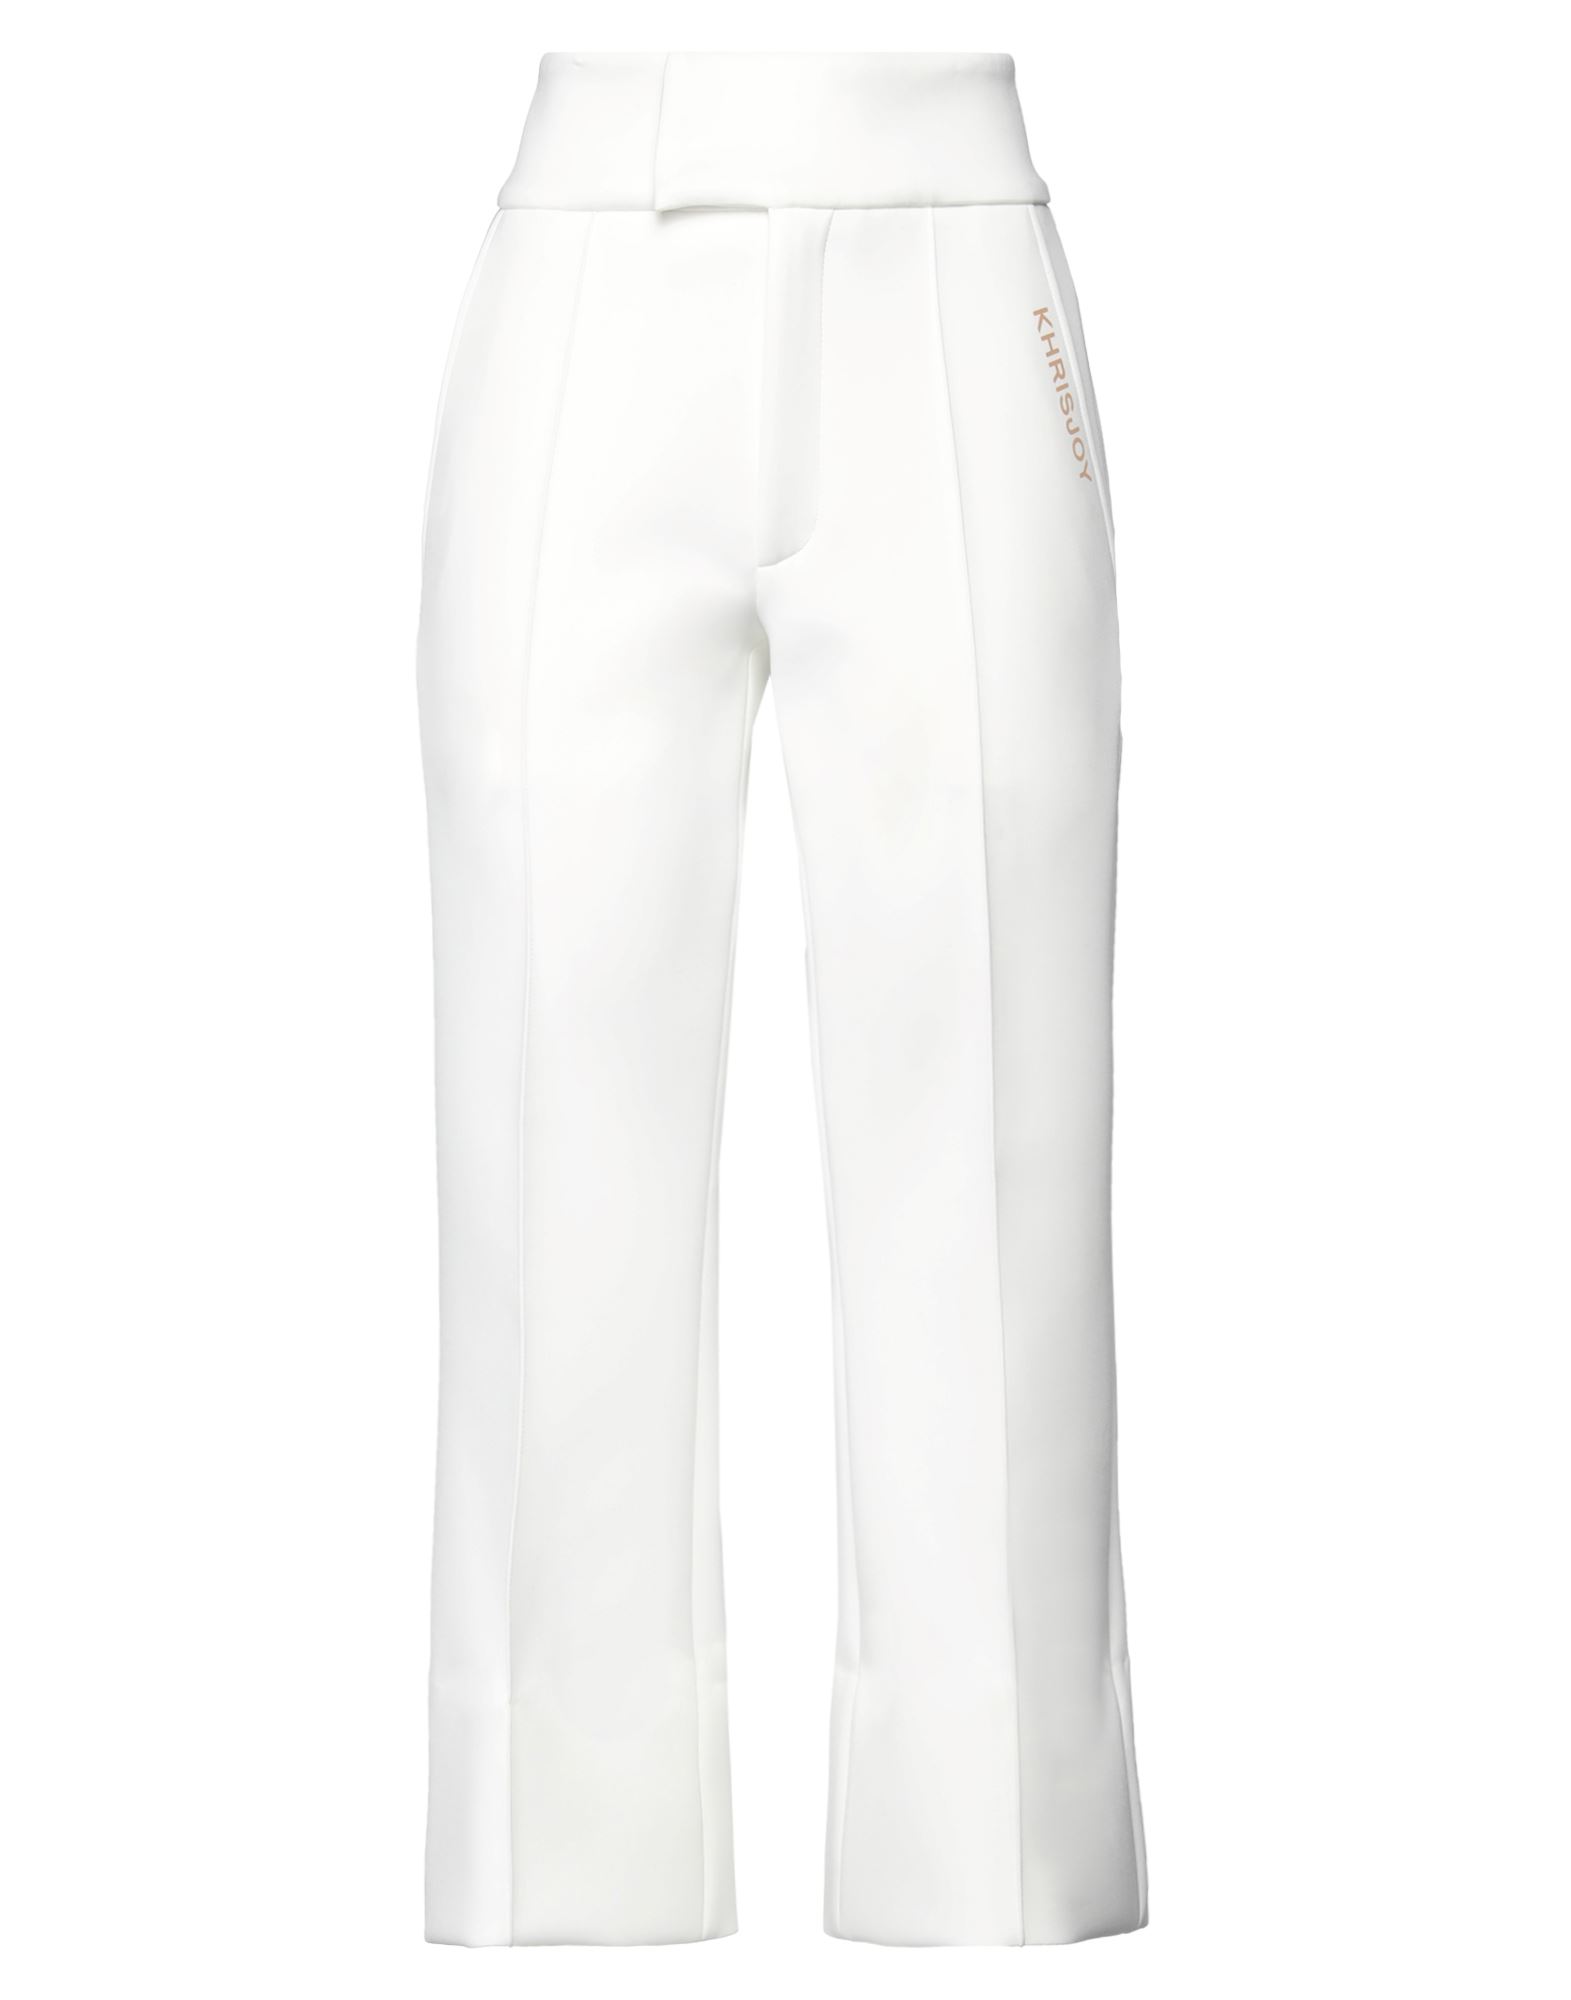 Shop Khrisjoy Woman Pants White Size S Polyester, Elastane